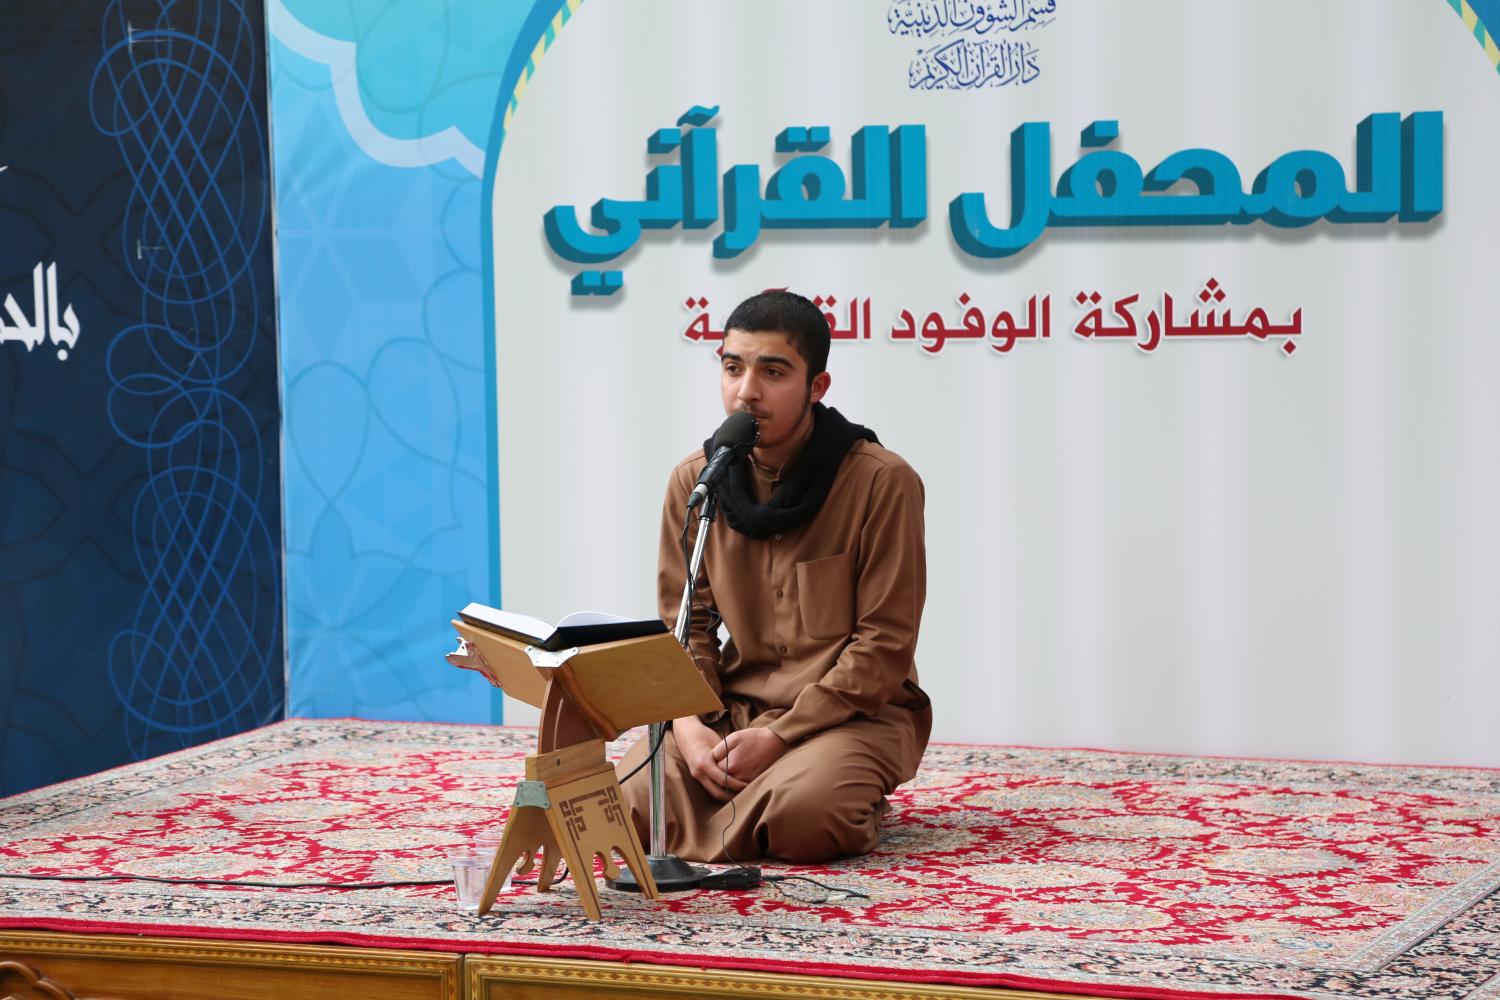 المحفل القرآني باستضافة الوفد القرآني من البصرة | 2018